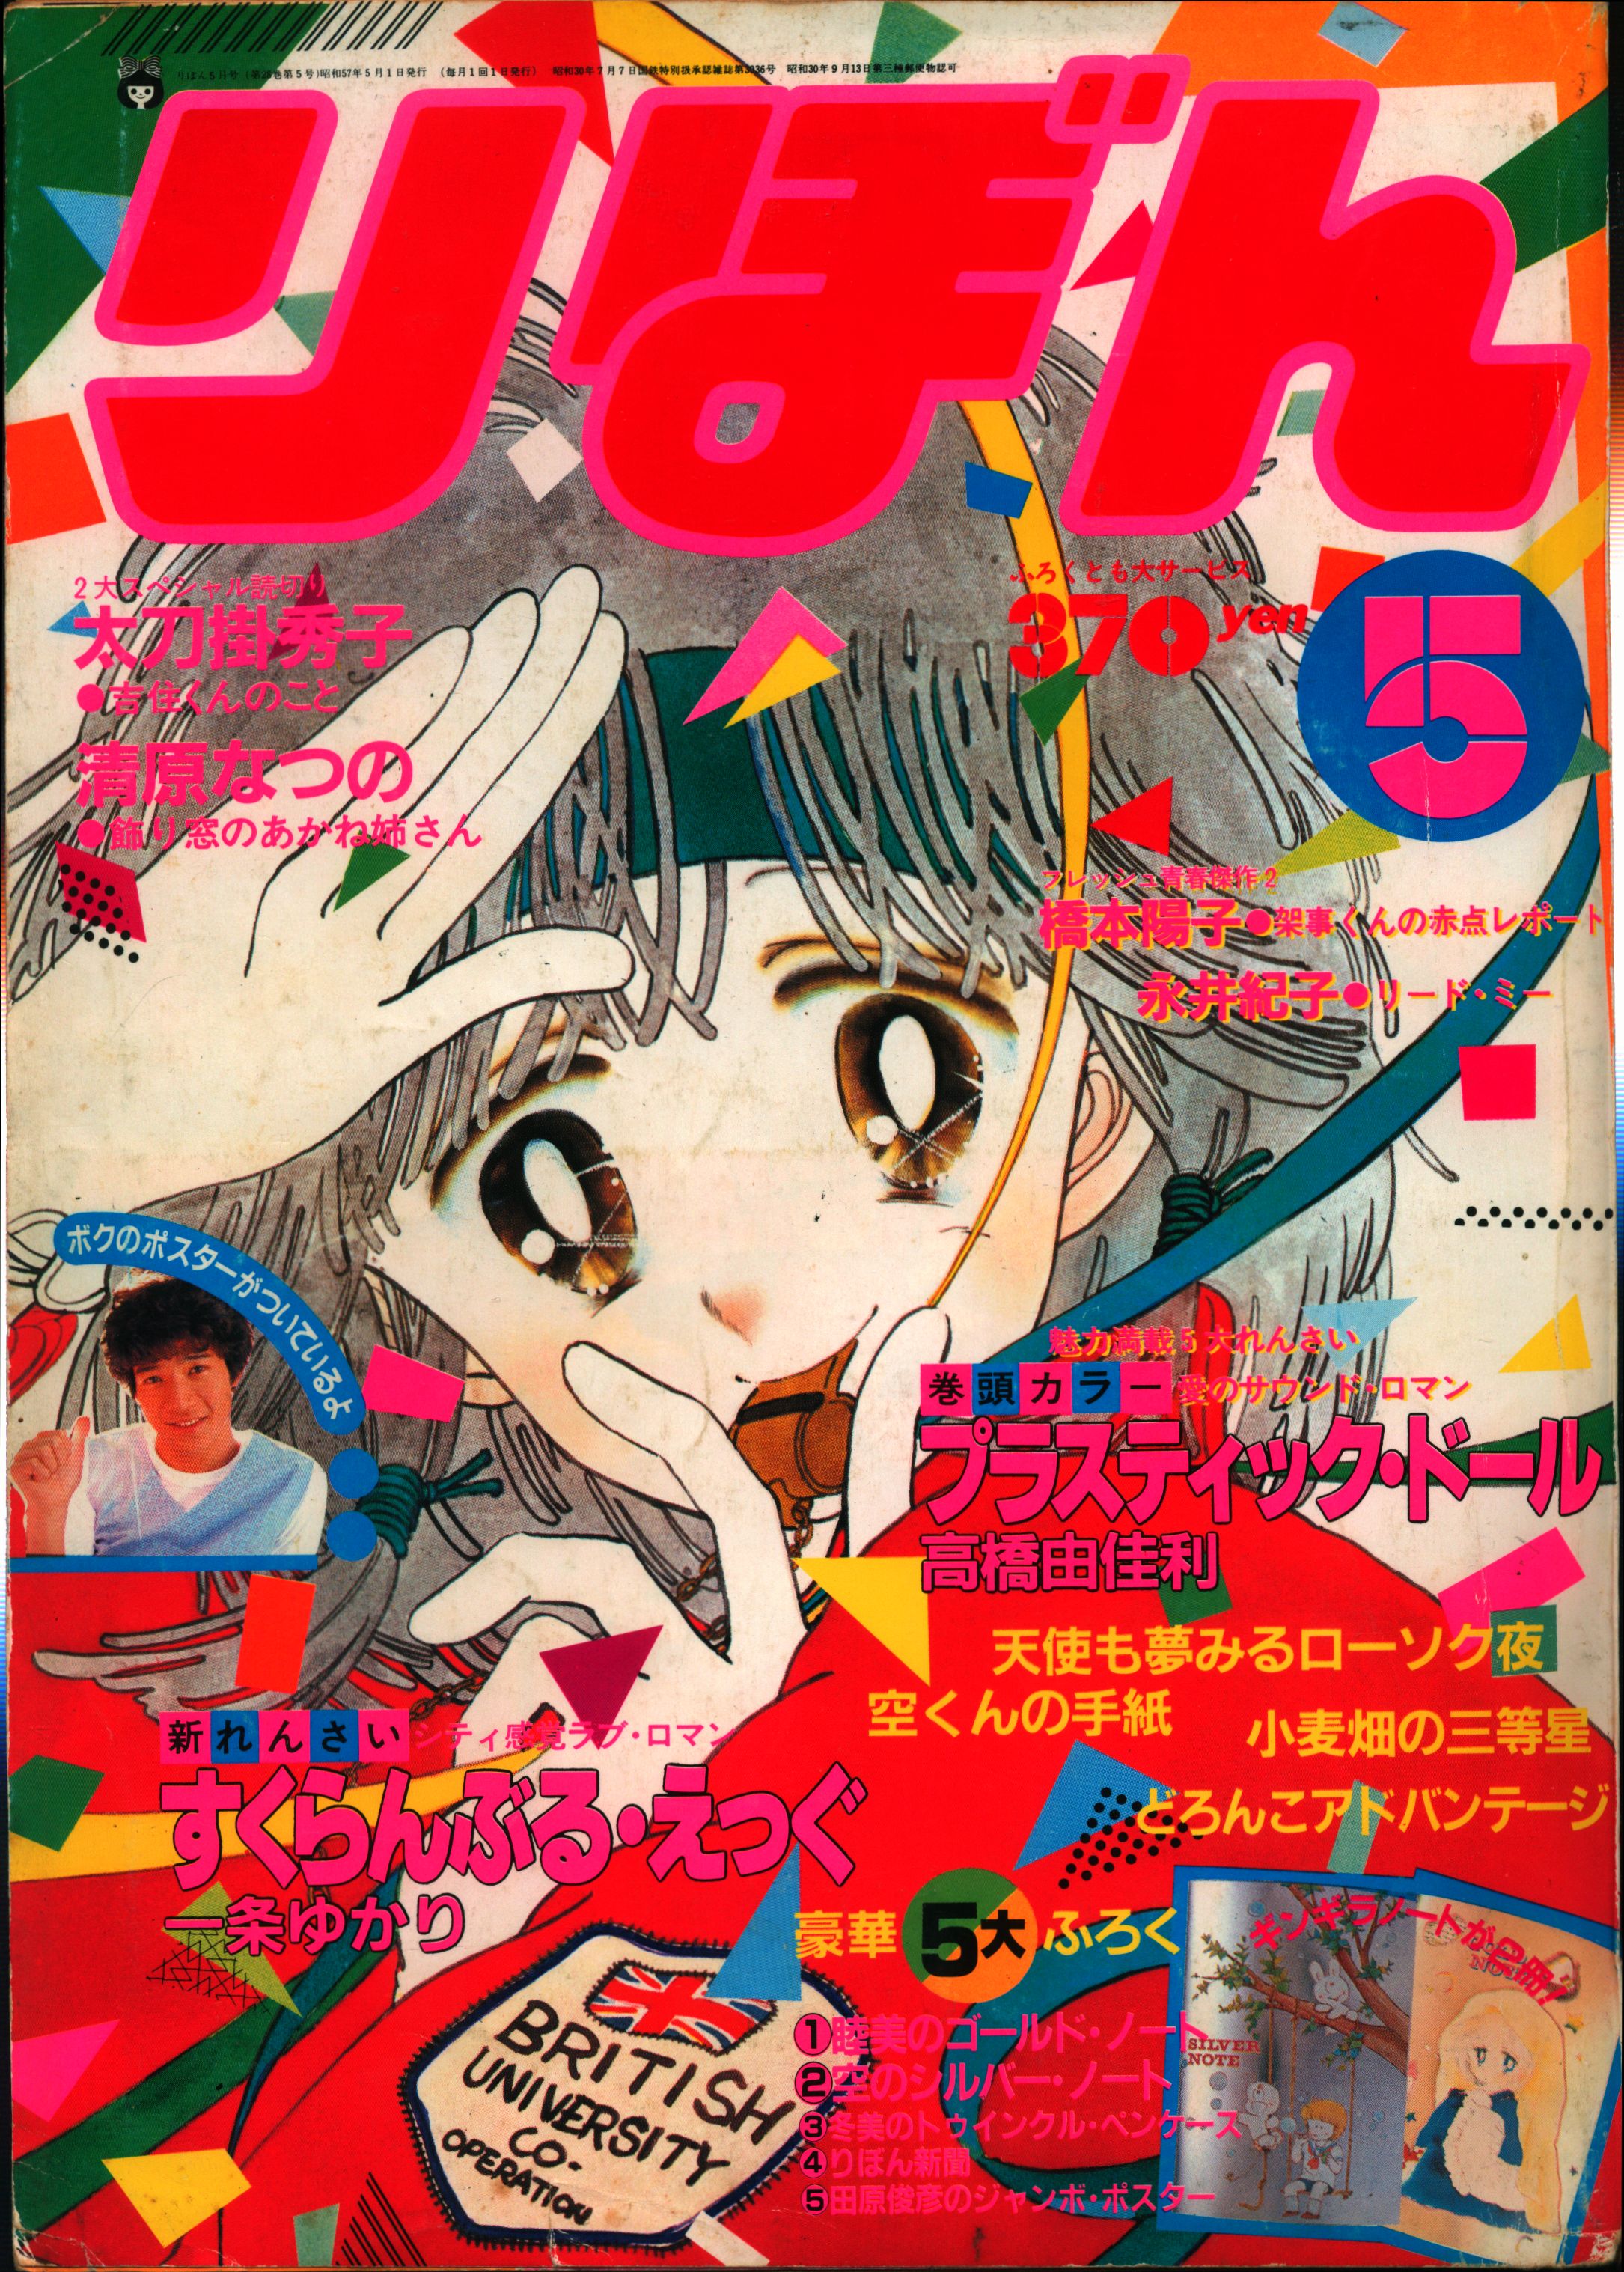 いていまし りぼん 1986年 2,5,6,7,9月号 集英社 昭和 少女雑誌 1980年代 bZg6f-m56893421472 めぐみ 